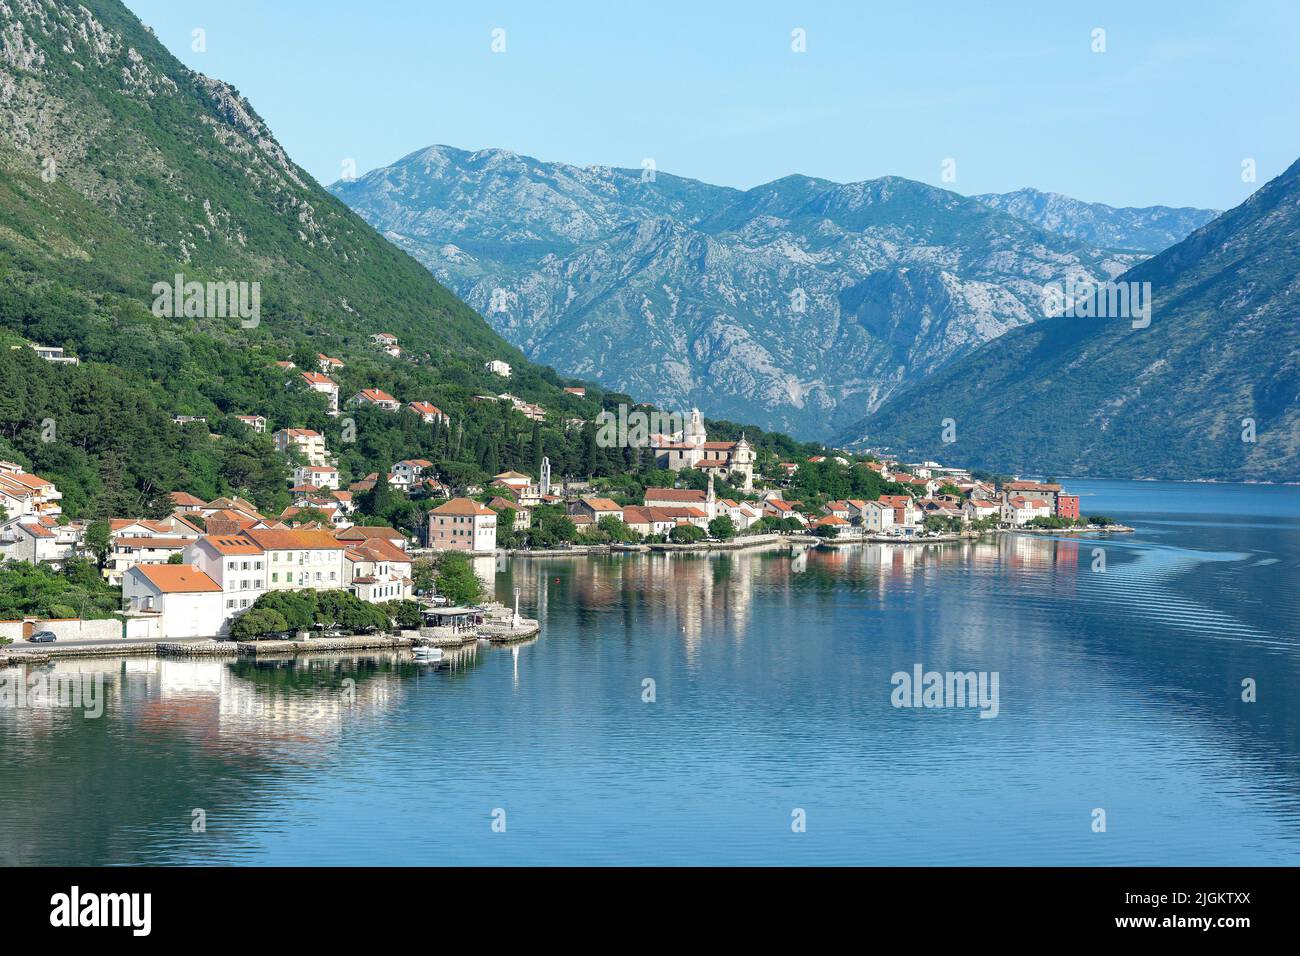 Ciudad costera de Prčanj, Bahía de Kotor (Boka kotorska), Kotor, Dalmacia, Montenegro Foto de stock